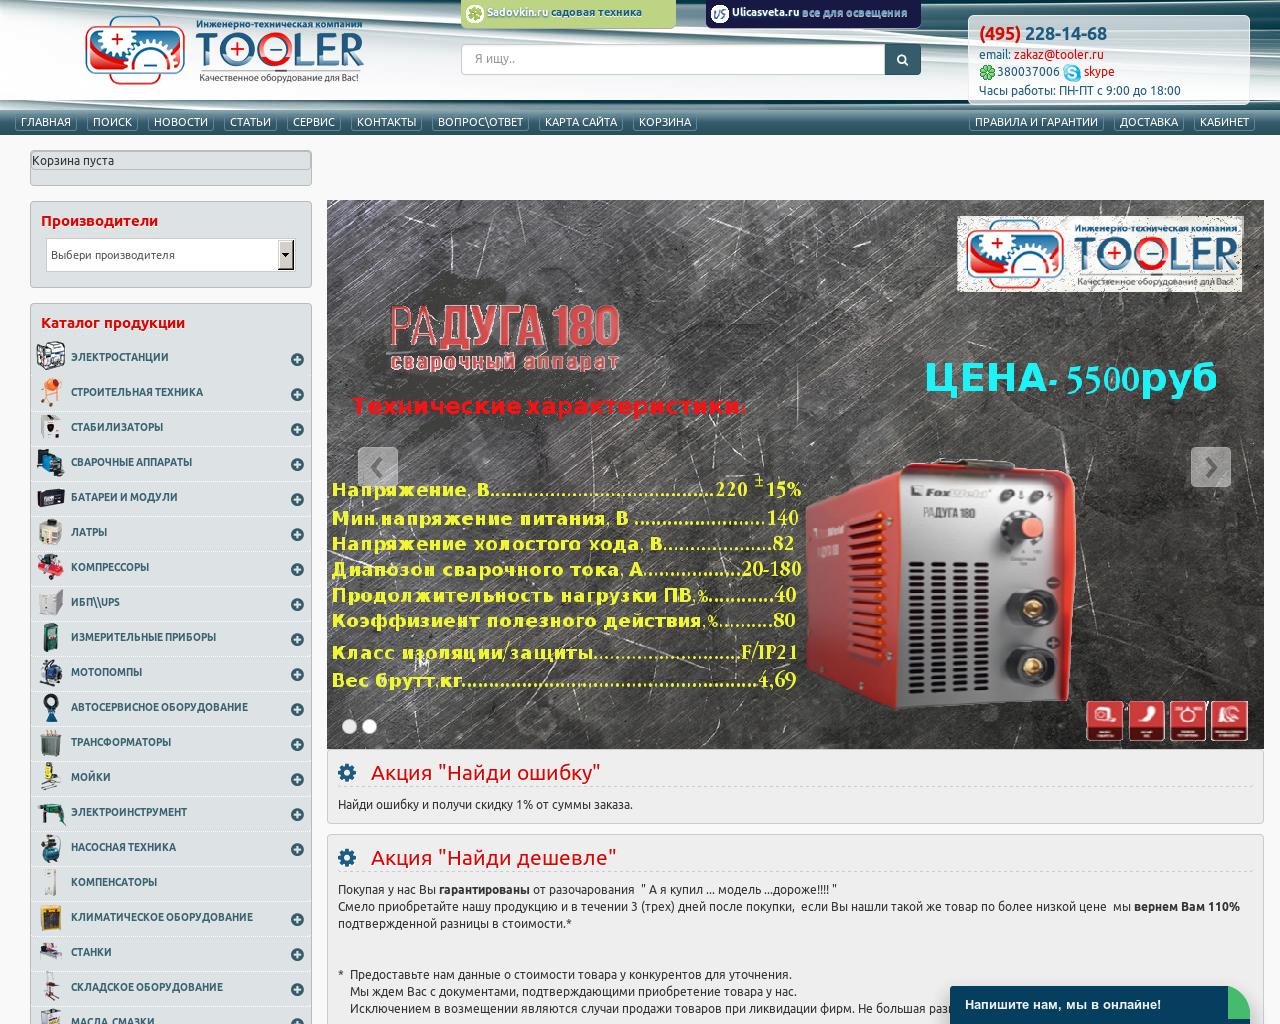 Изображение сайта tooler.ru в разрешении 1280x1024